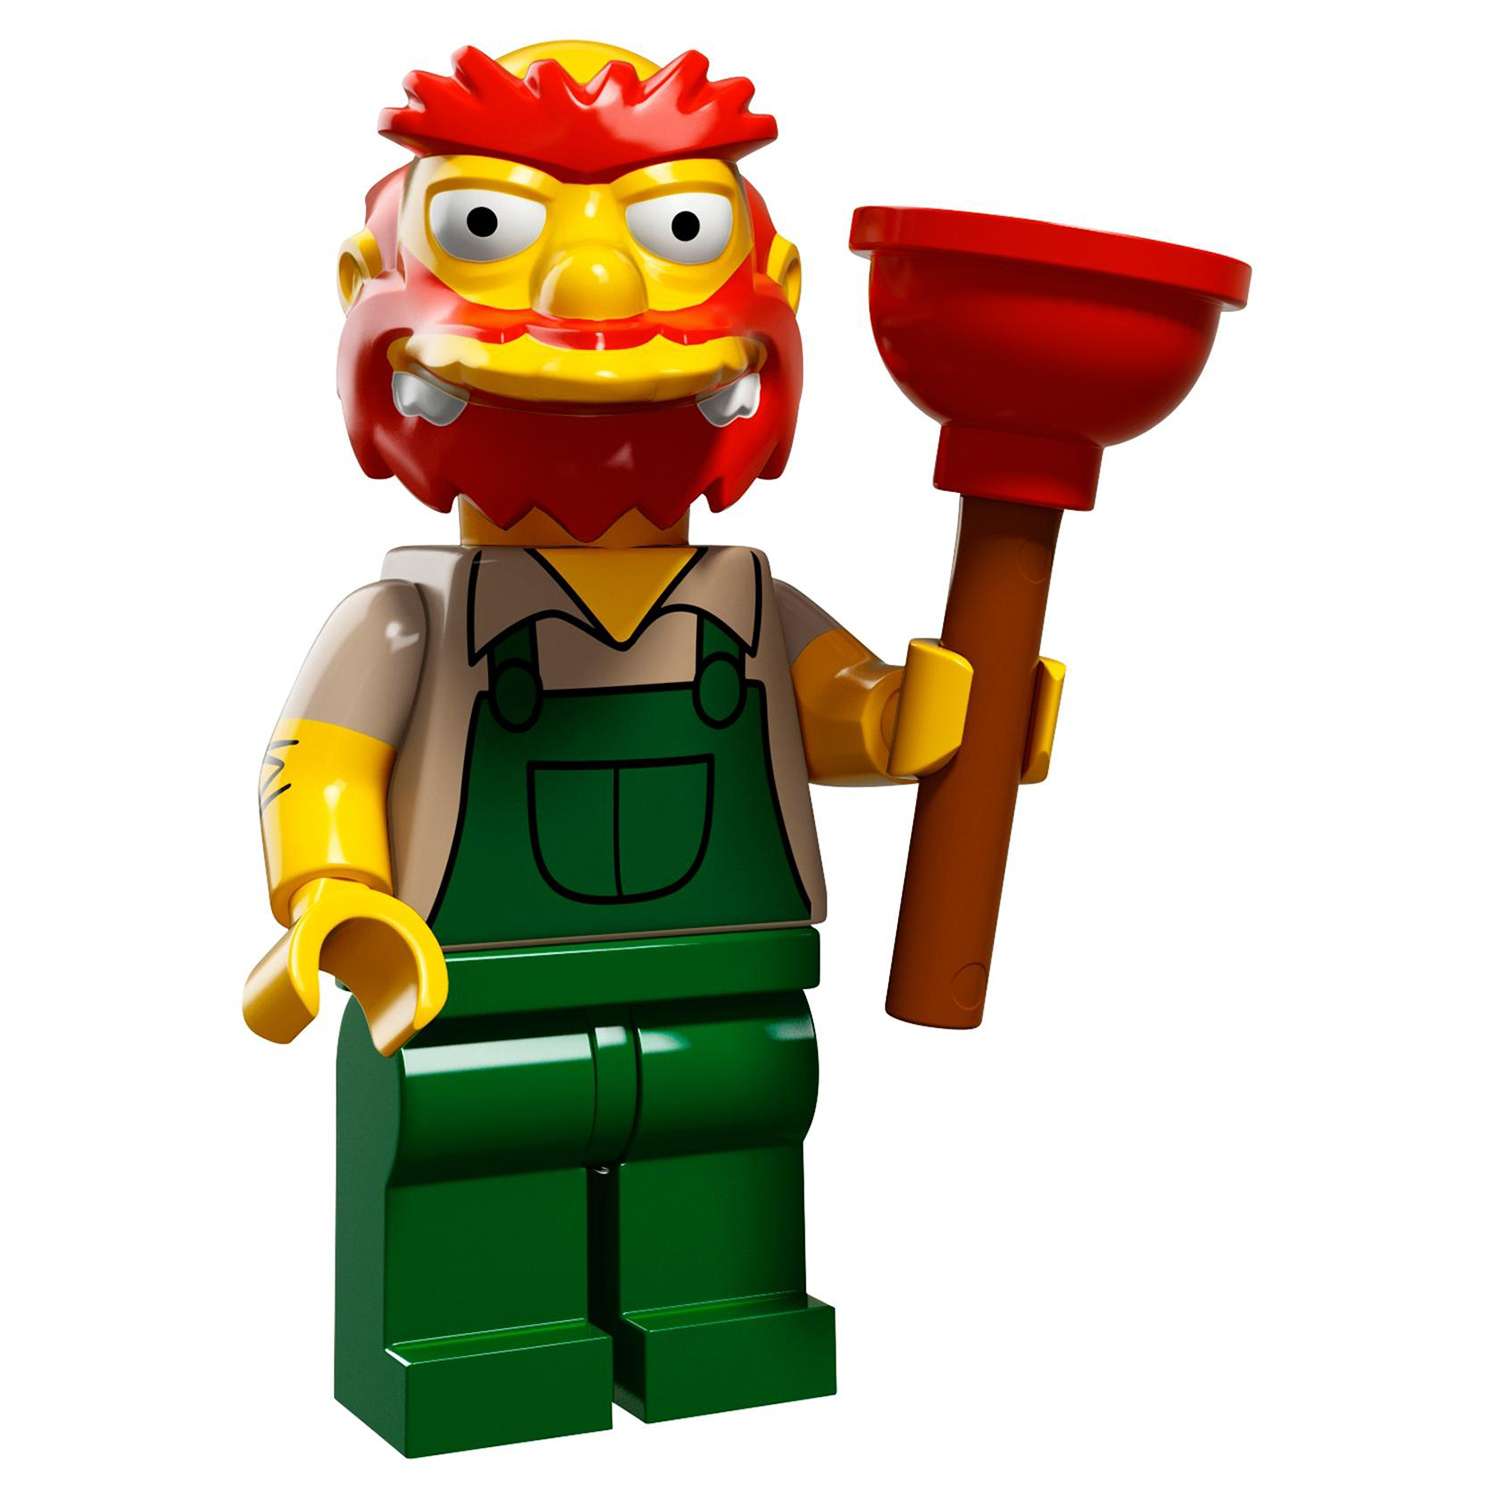 Конструктор LEGO Minifigures Минифигурки LEGO® Серия «Симпсоны» 2.0 (71009) - фото 23